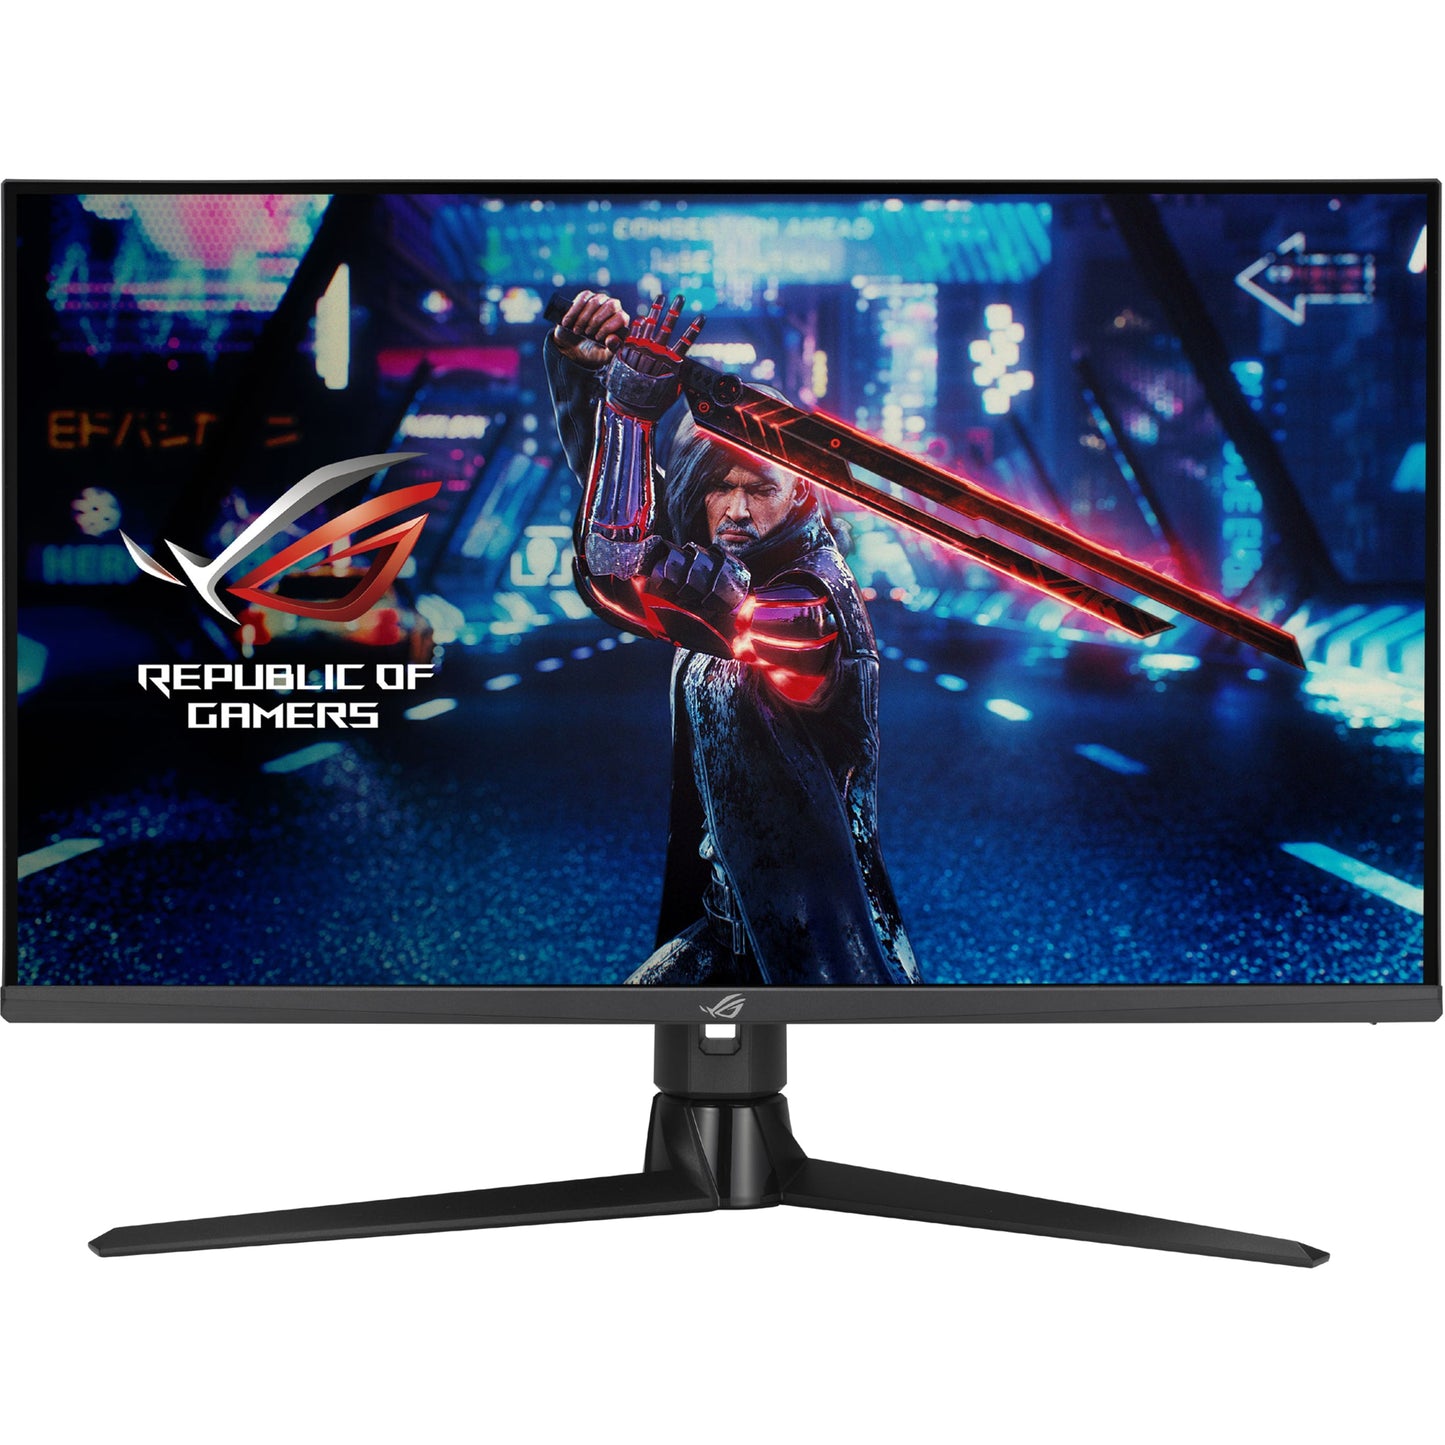 Asus ROG Strix XG32UQ 32" 4K UHD Gaming LCD Monitor - 16:9